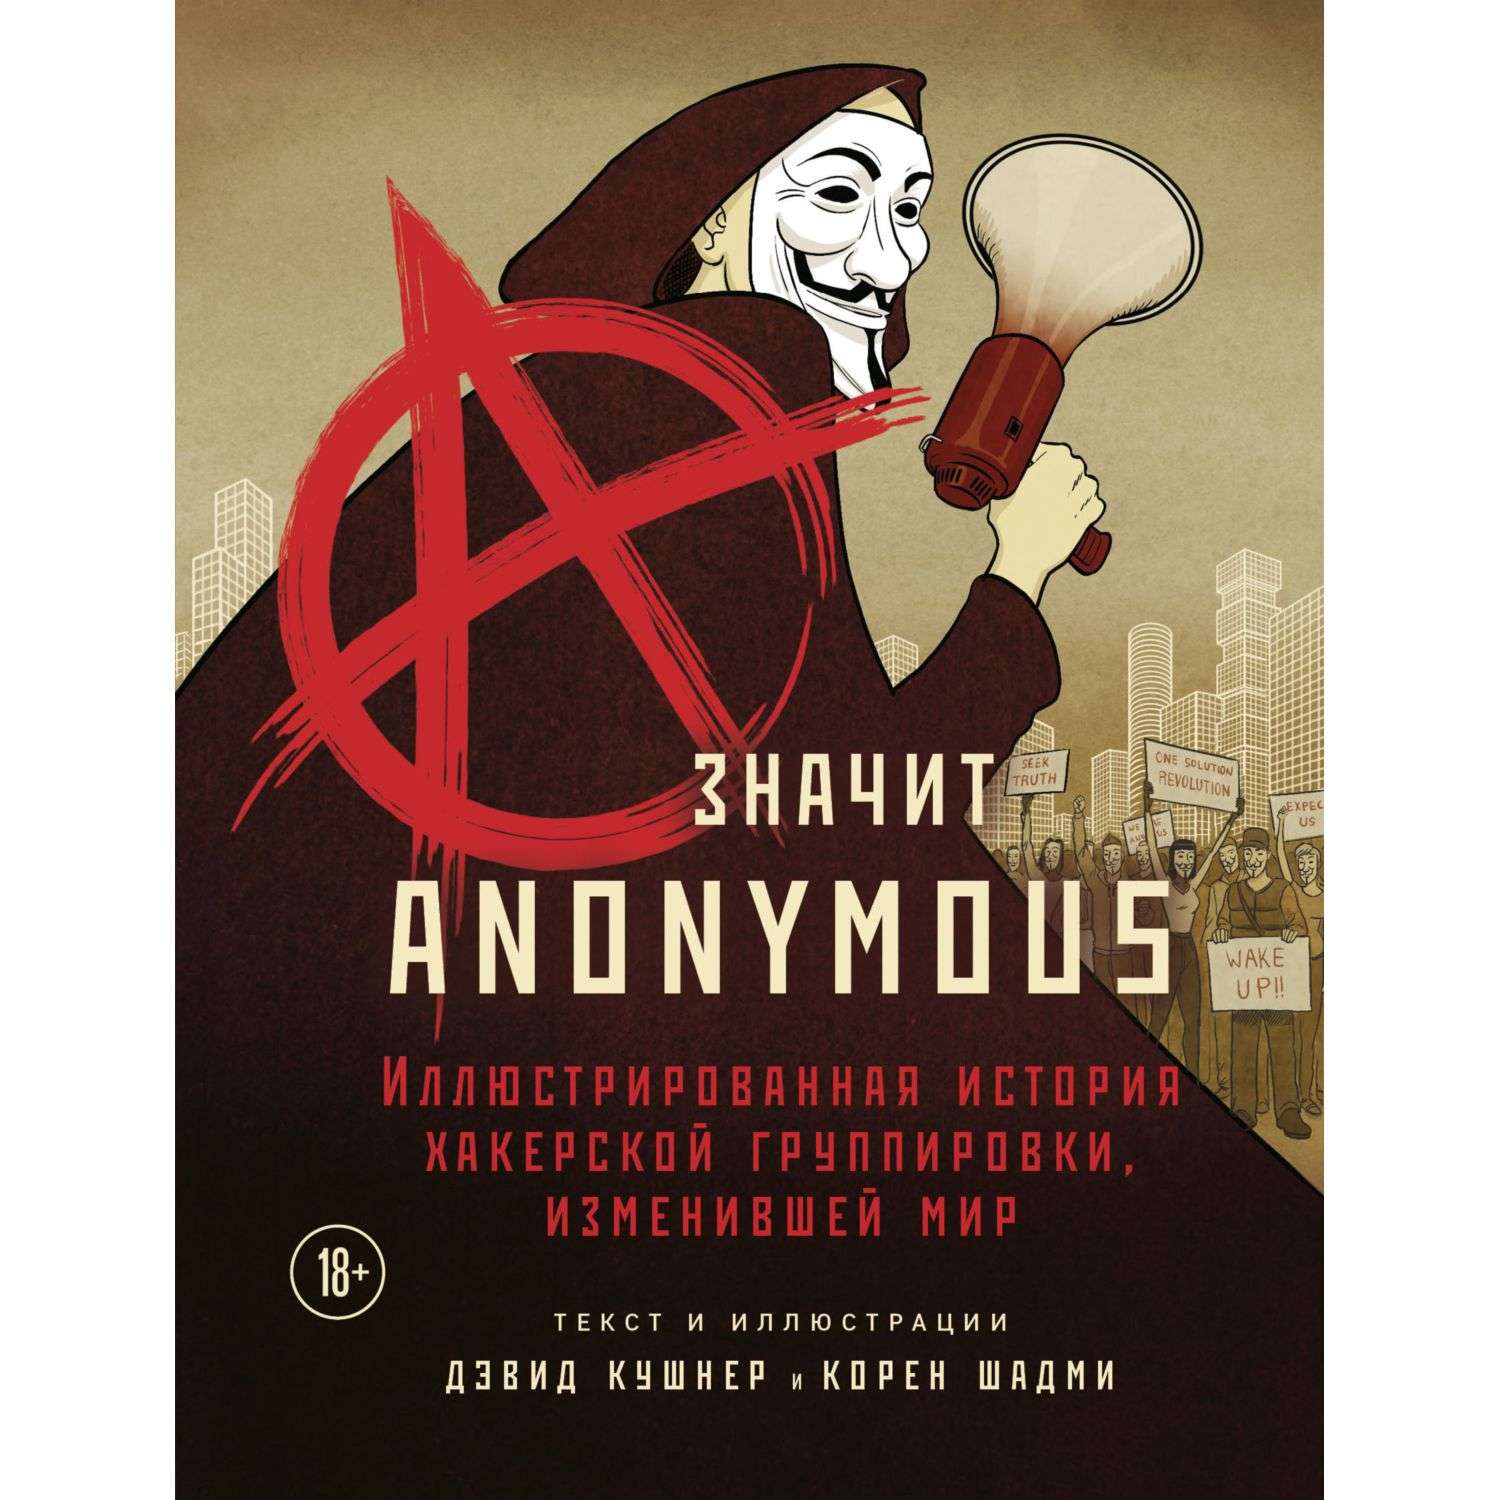 Книга БОМБОРА A значит Anonymous Иллюстрированная история хакерской группировки изменившей мир - фото 1